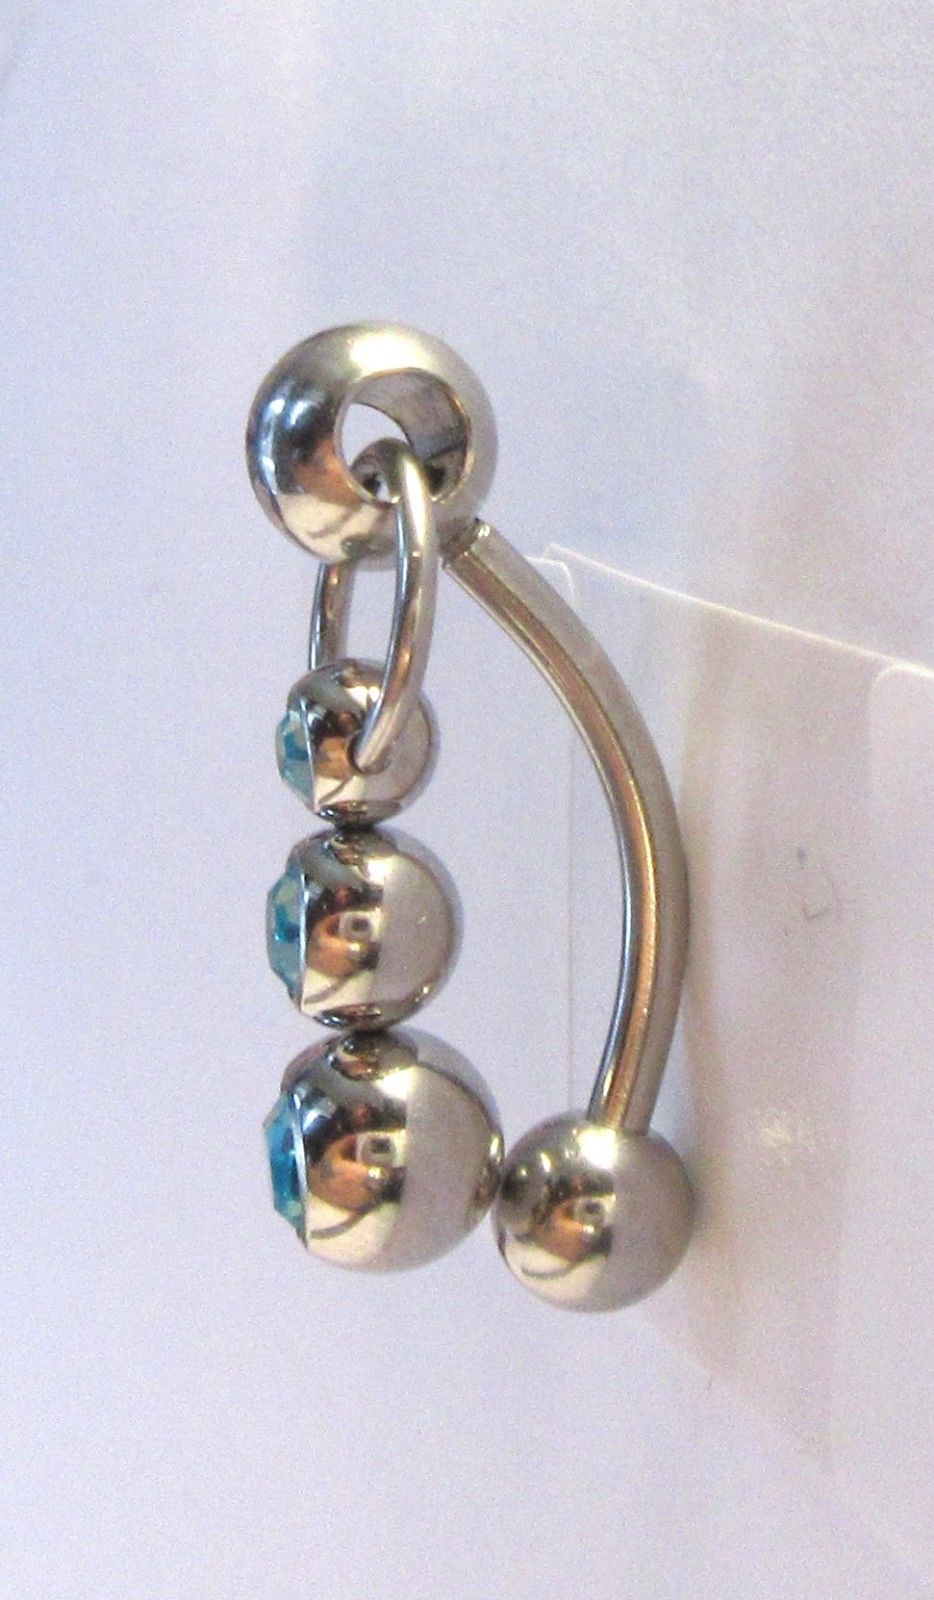 Silver M. reccomend Silver clit jewelry